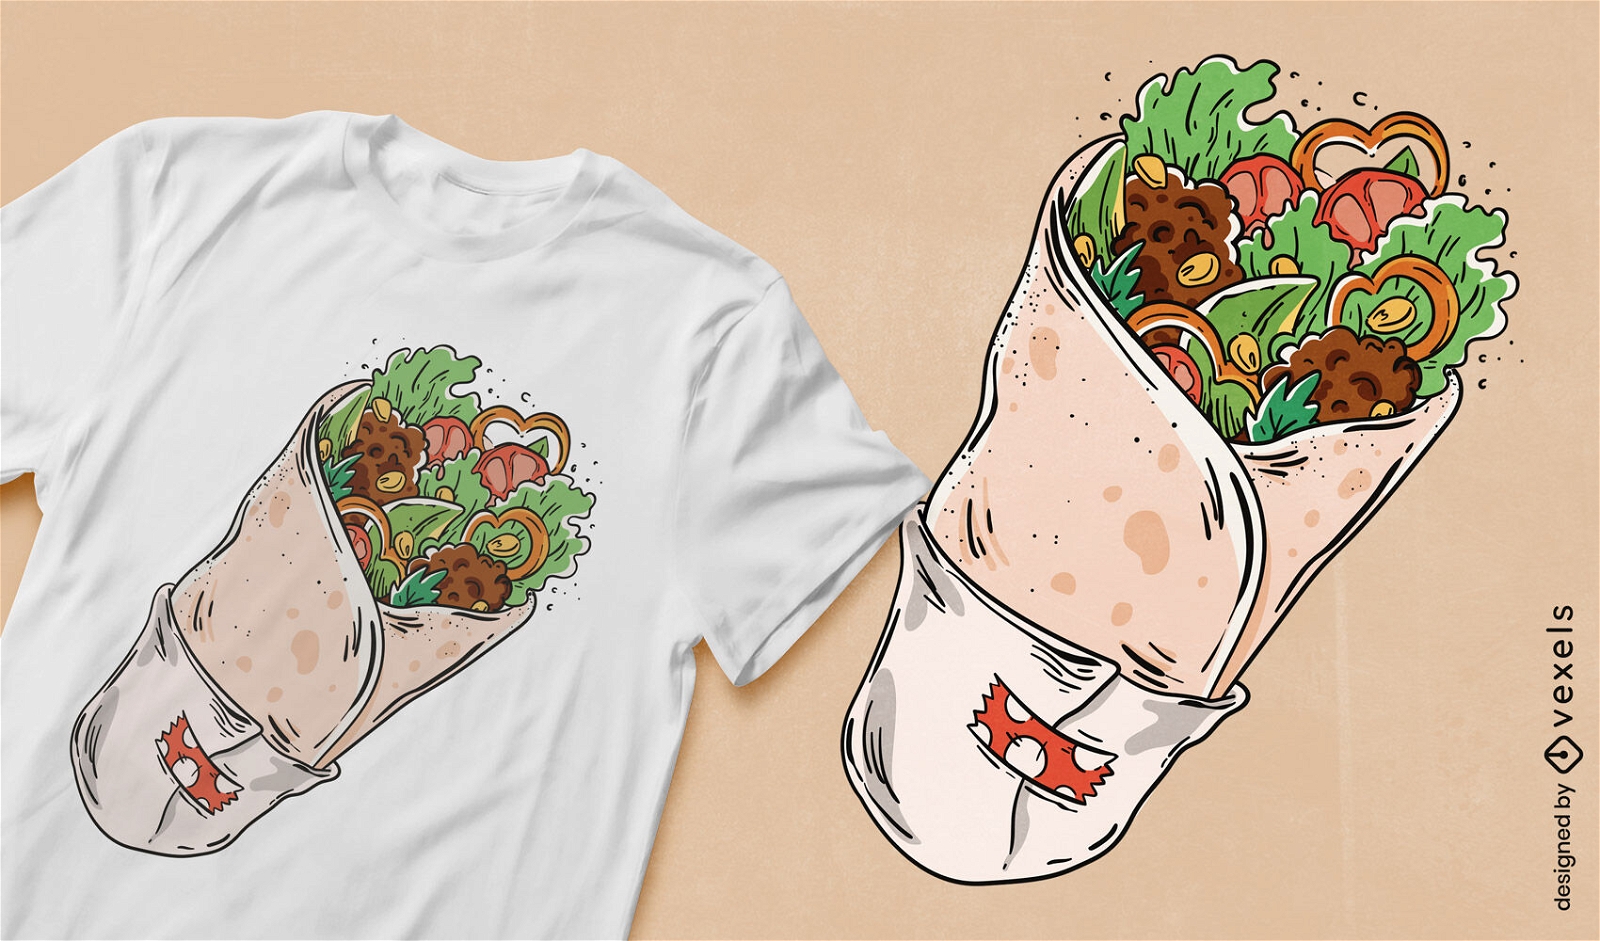 Doner wrap food t-shirt design